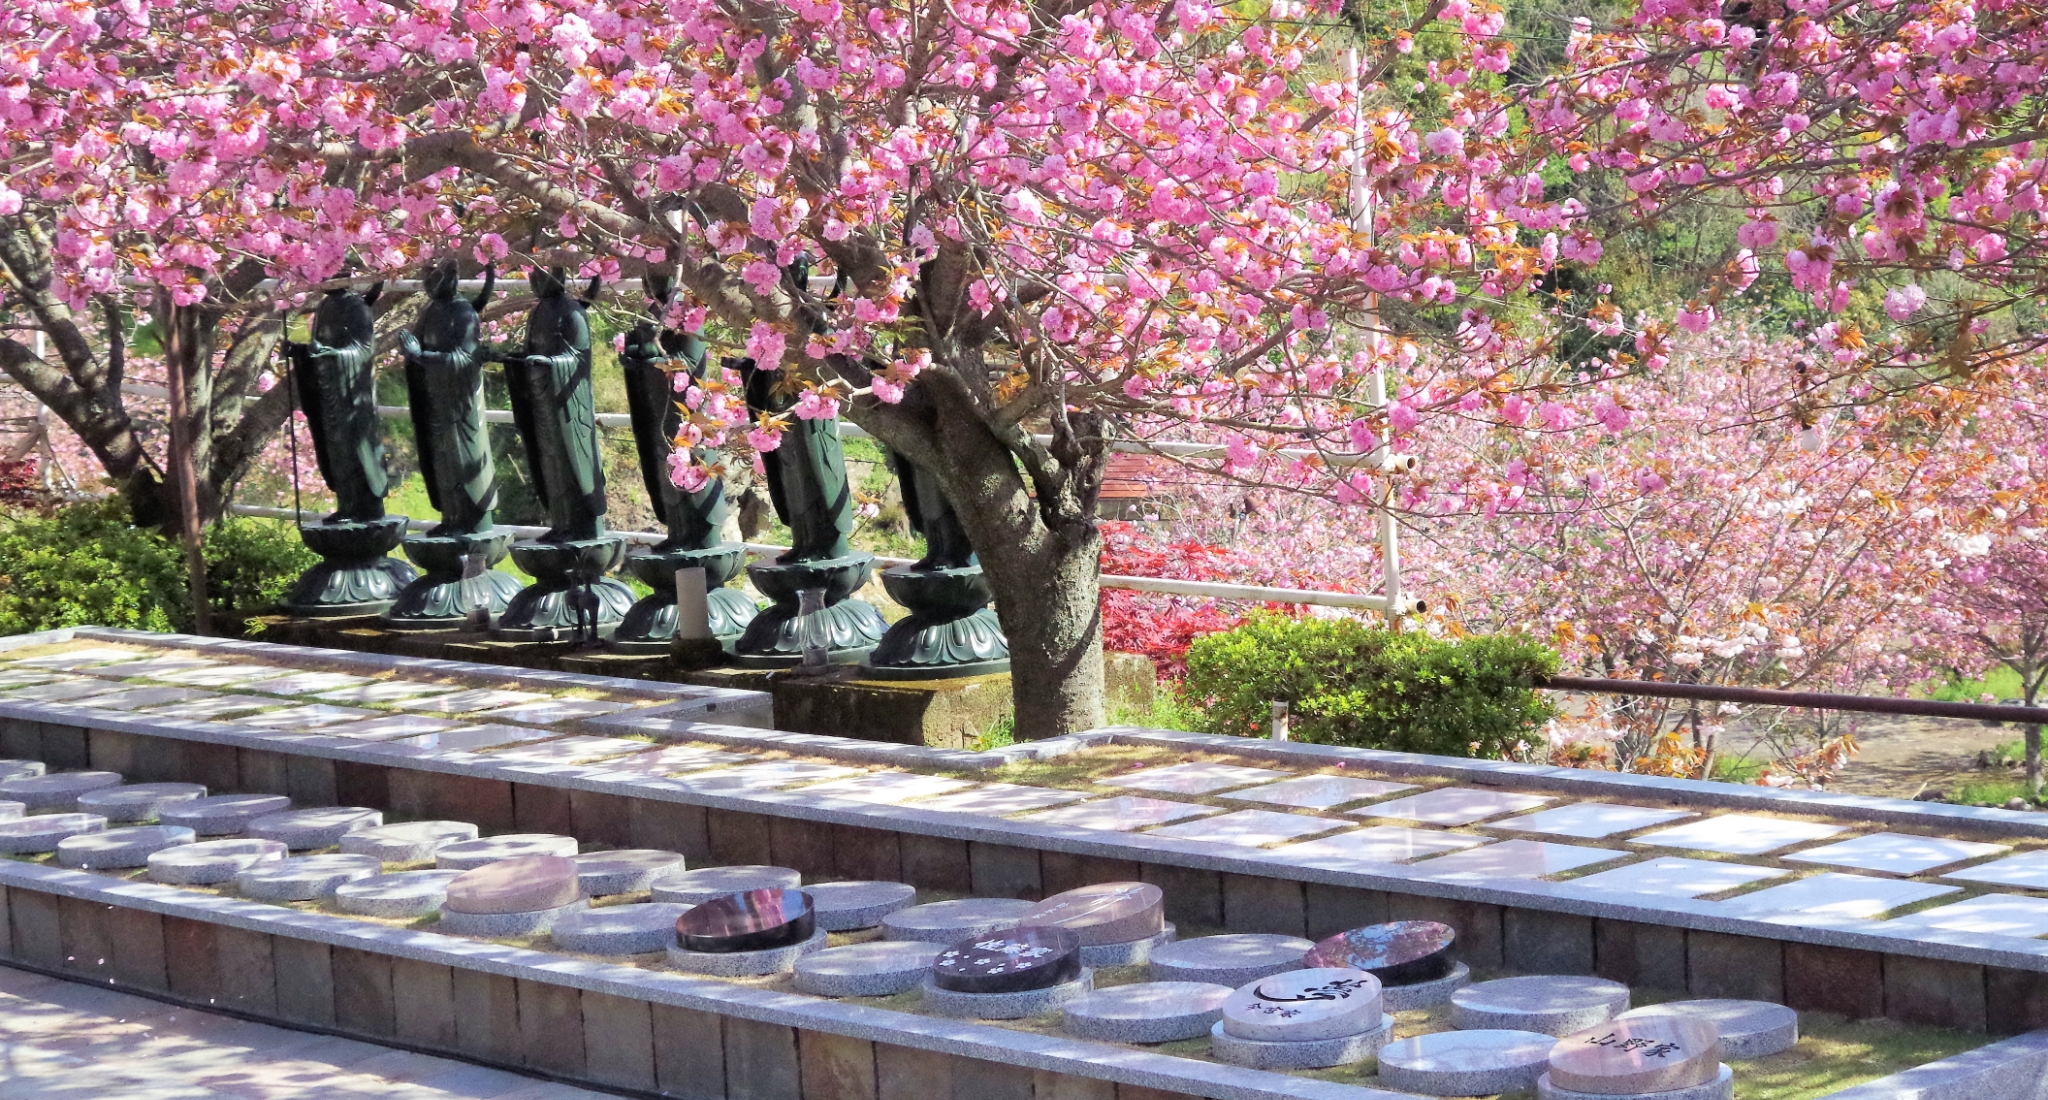 絶景お寺で、美しい八重桜に見守られて眠る<br>大分一心寺の樹木葬「夢さくら」<br>4名様まで収容可能、今なら45万円でご利用いただけます。